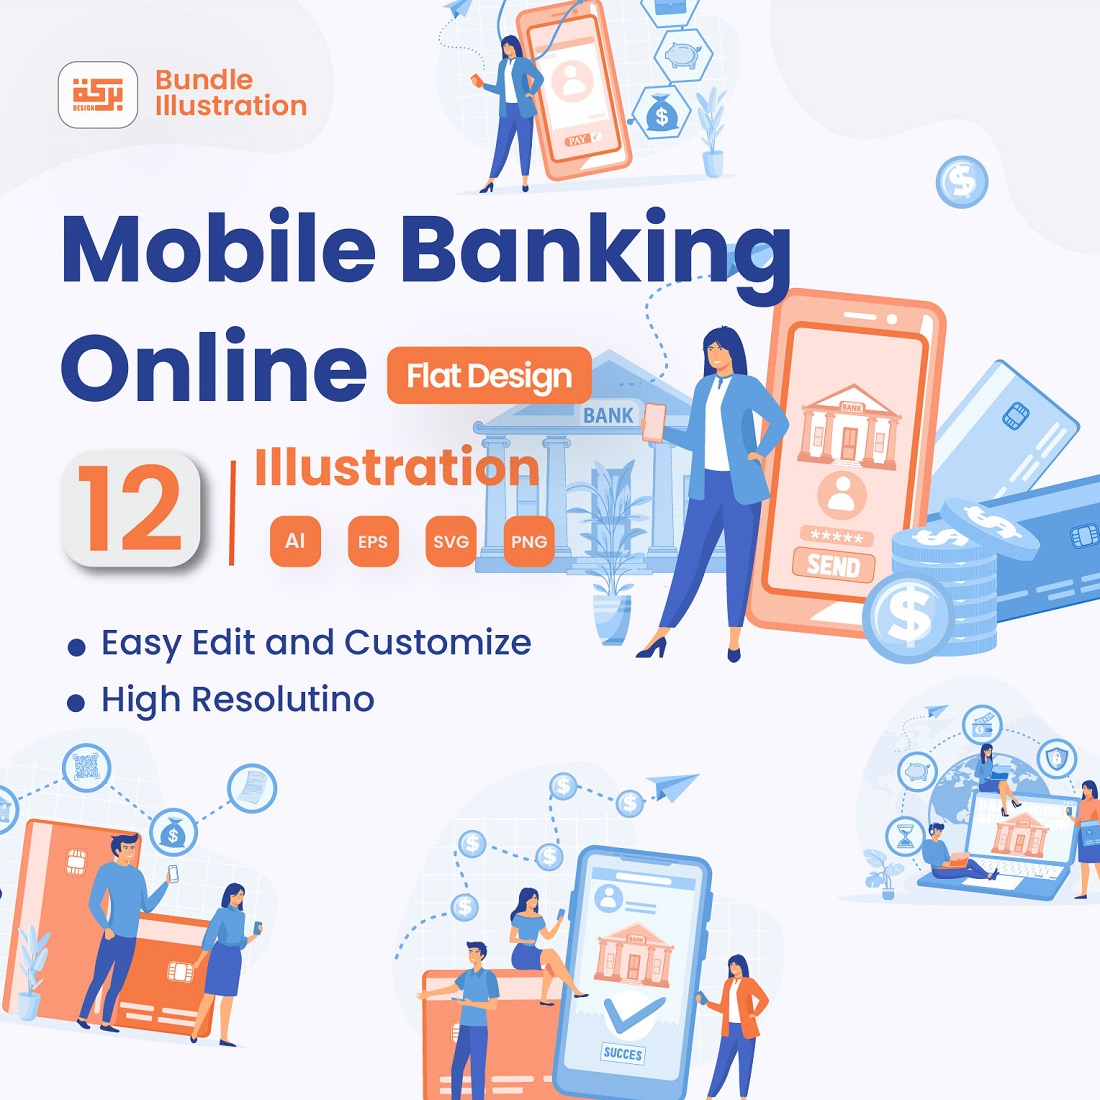 Mobile Banking Service Illustration Design cover image.